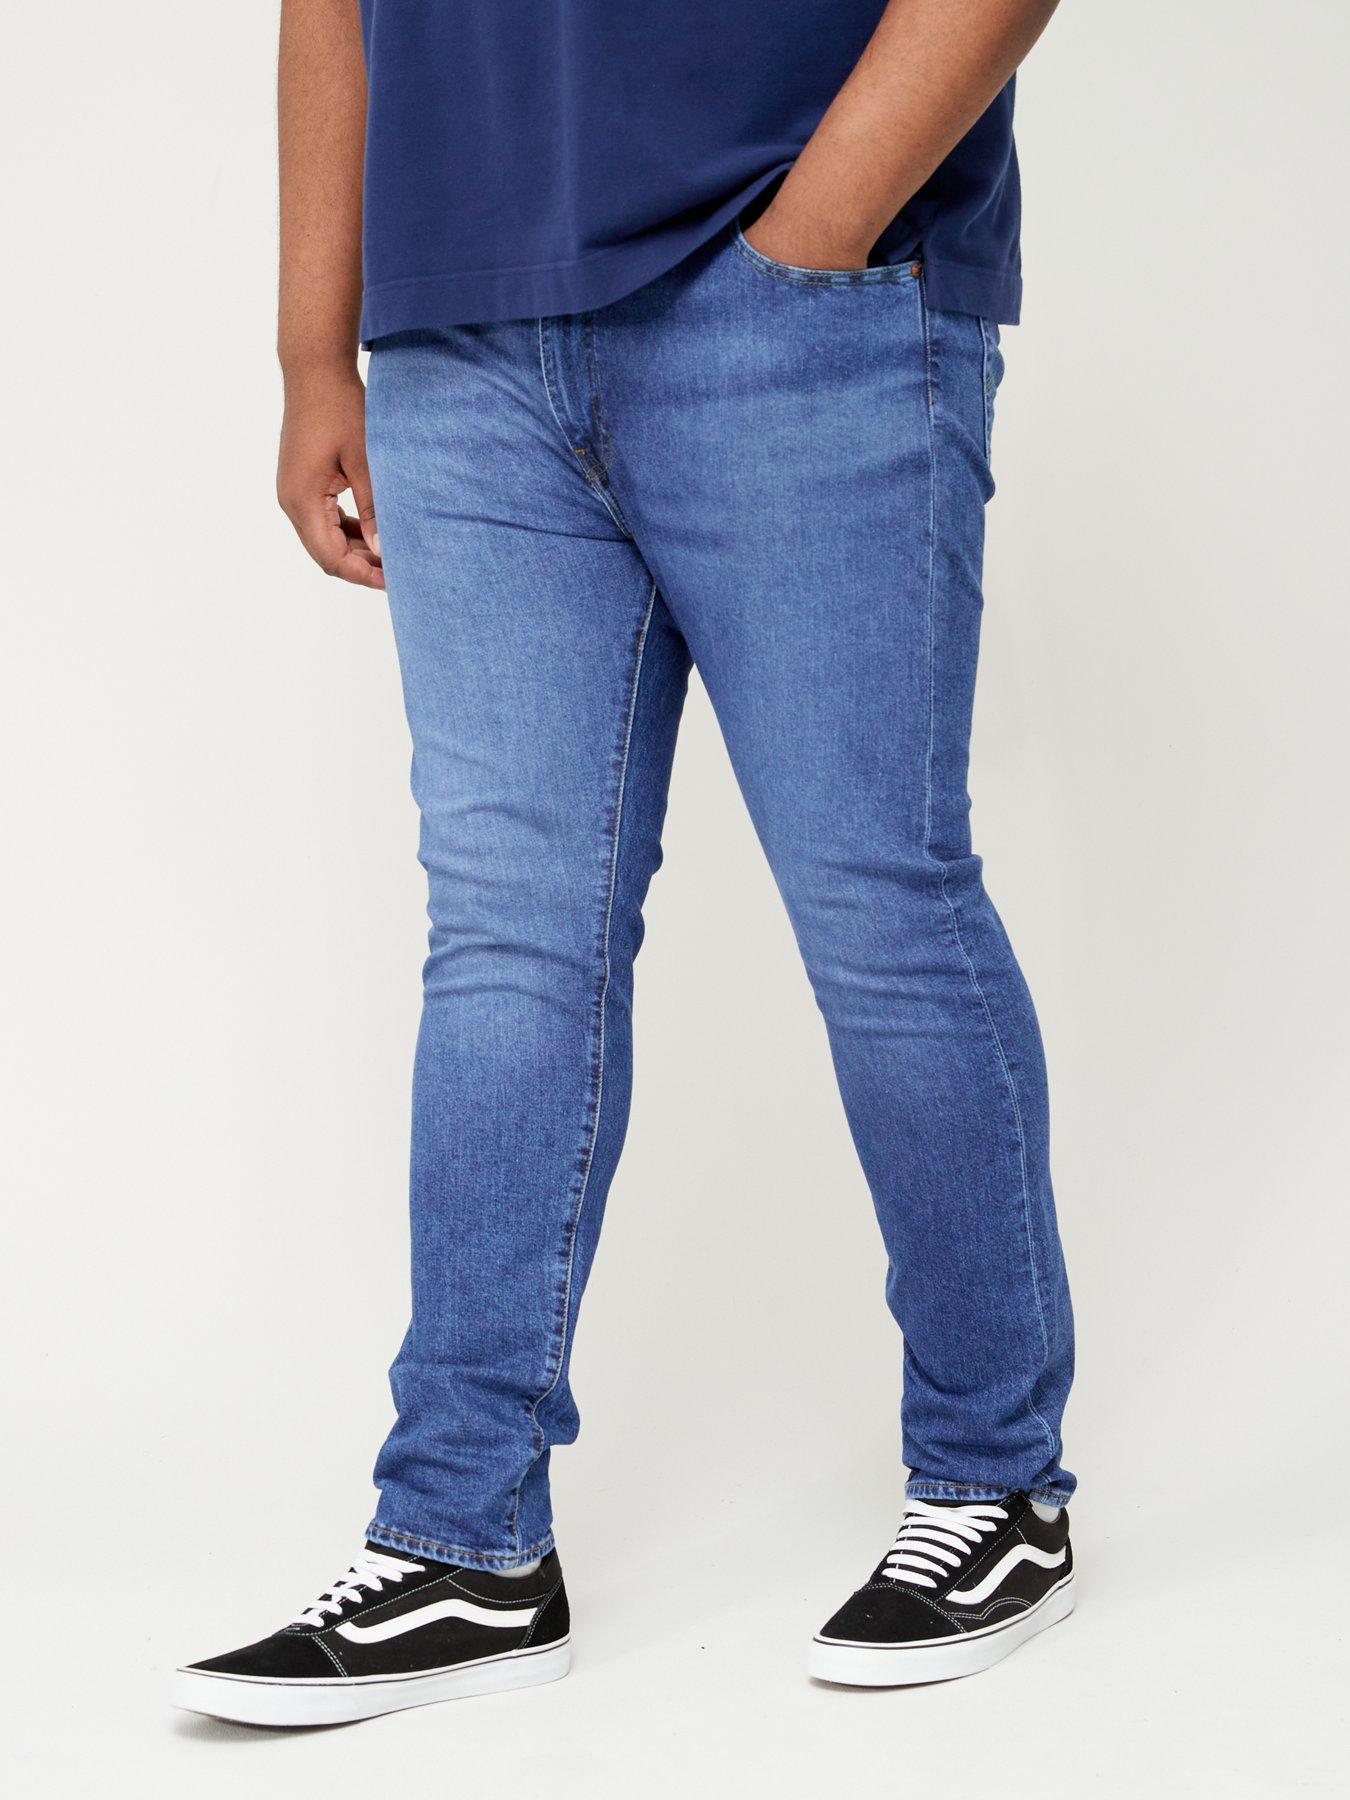 Levi's Big & Tall 512 Slim Taper Fit Jeans - Mid Wash 